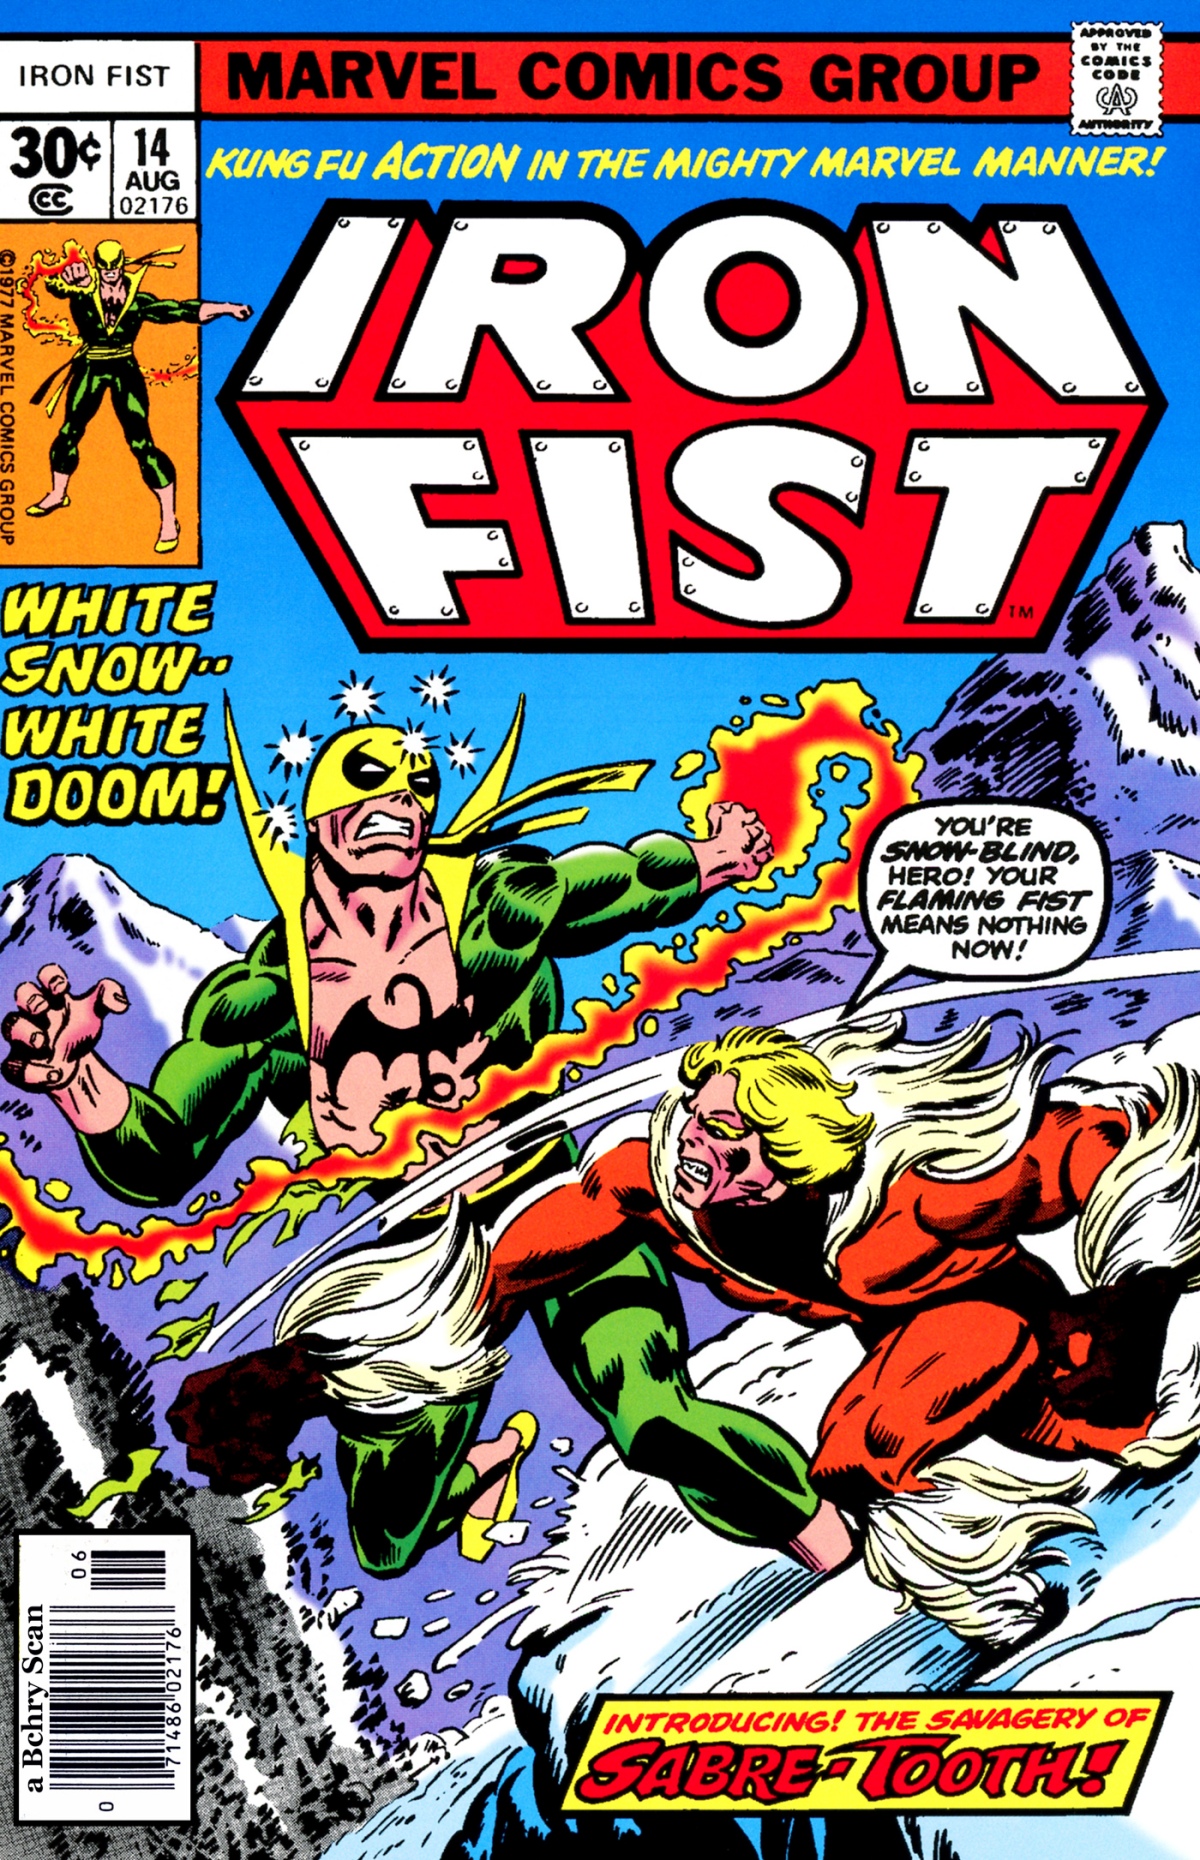 Iron Fist vs. Sabertooth (Iron Fist #14, 1977)